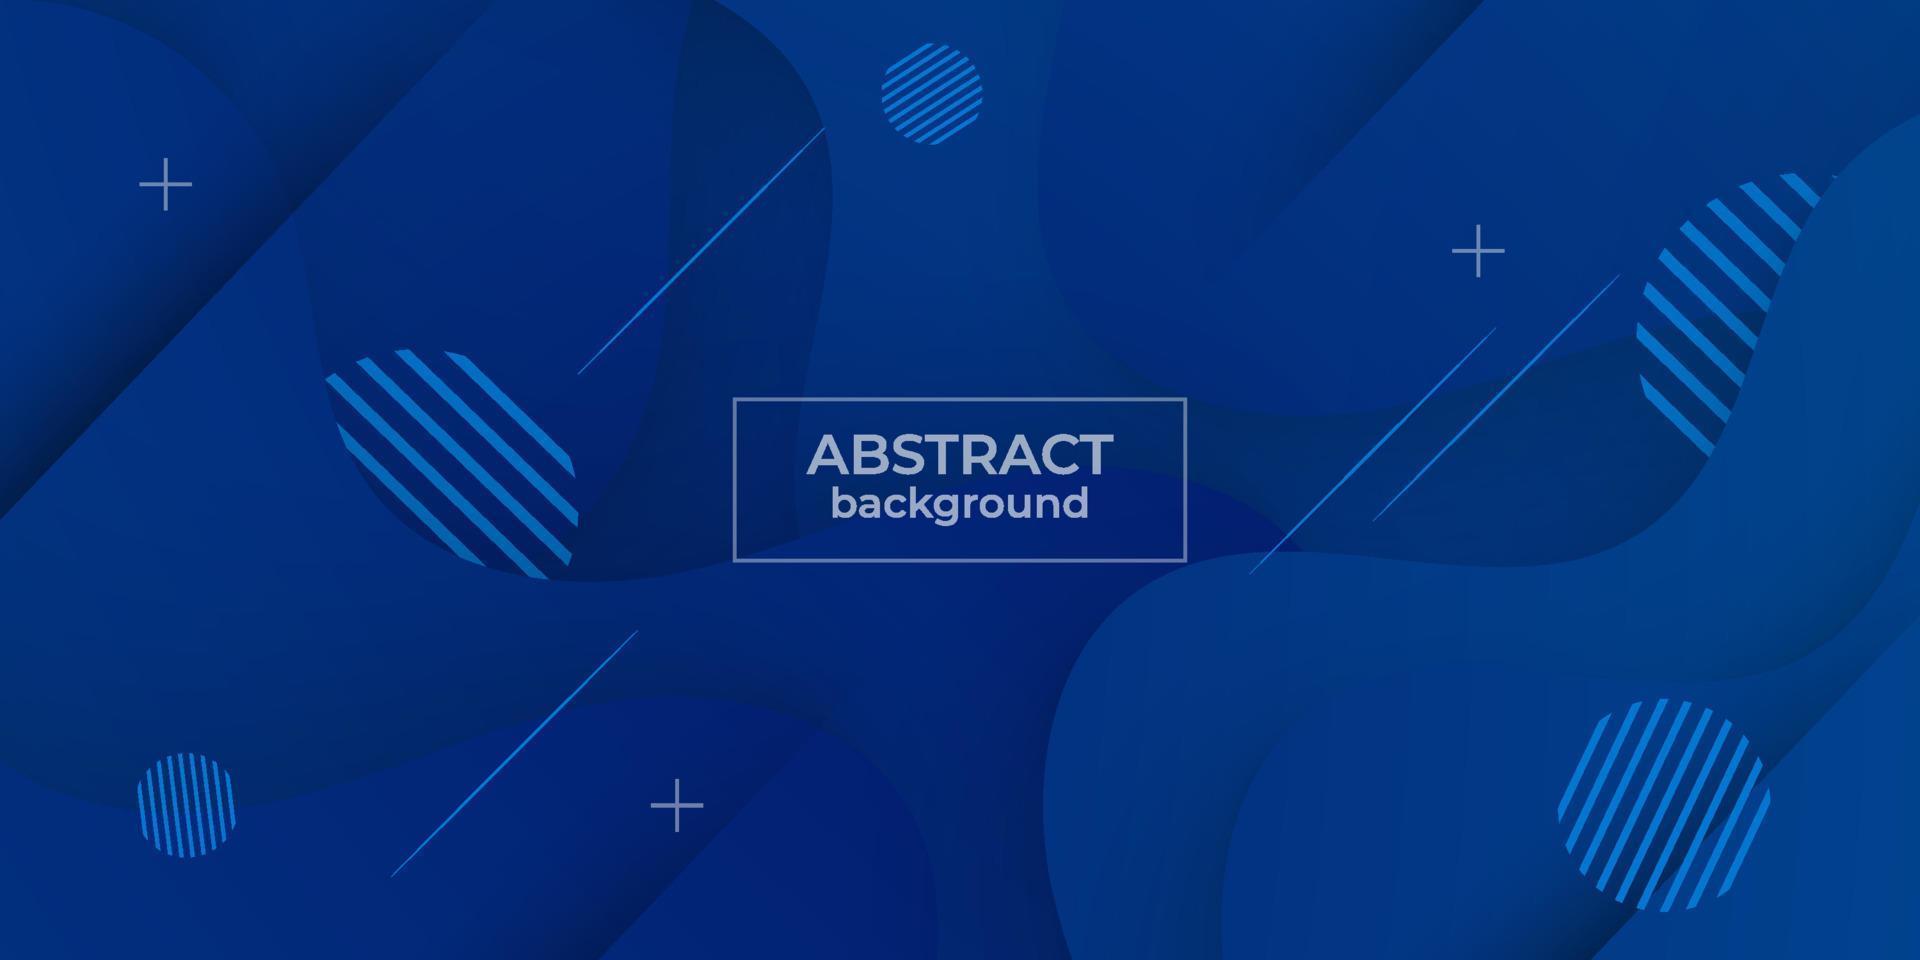 moderne elegante blaue abstrakte hintergrundgeometrie für banner, cover, flyer, broschüre, posterdesign, geschäftspräsentation und website. eps10-Vektor vektor